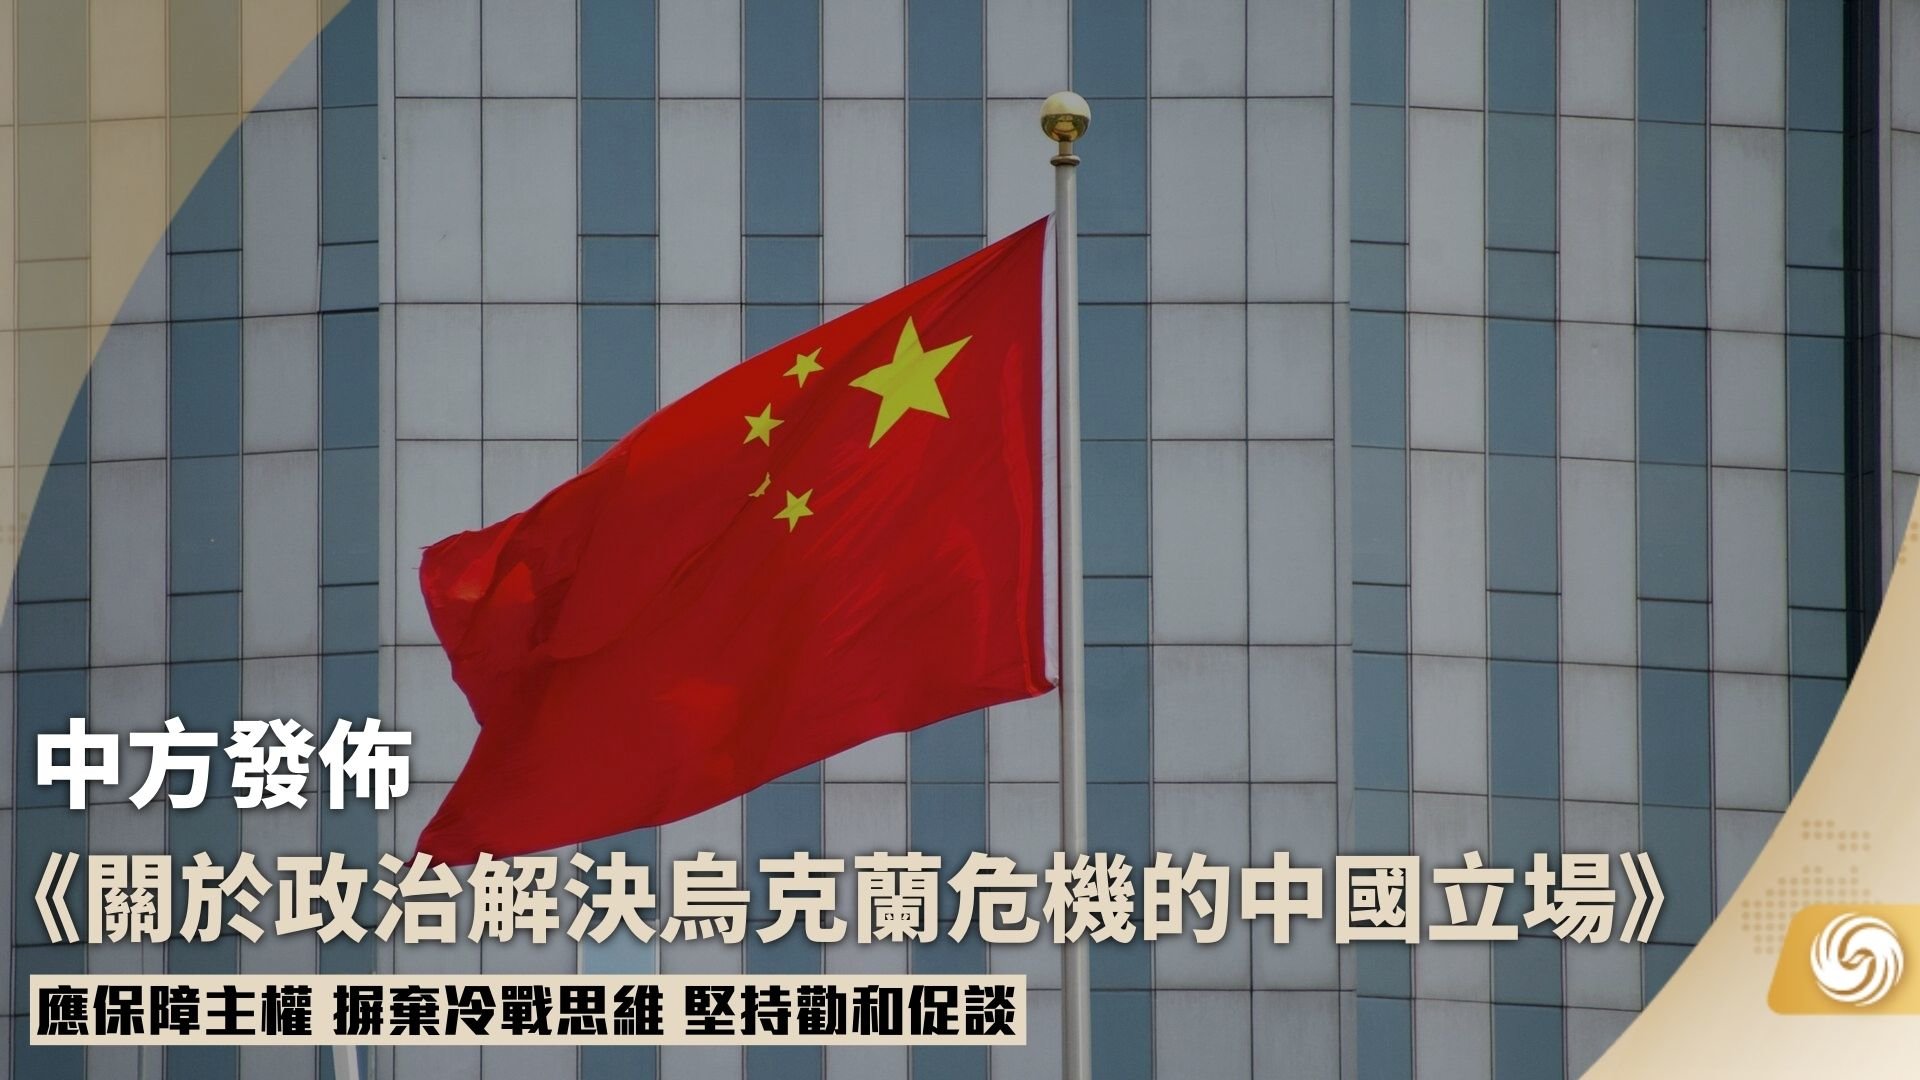 中国外交部发布《关于政治解决乌克兰危机的中国立场》